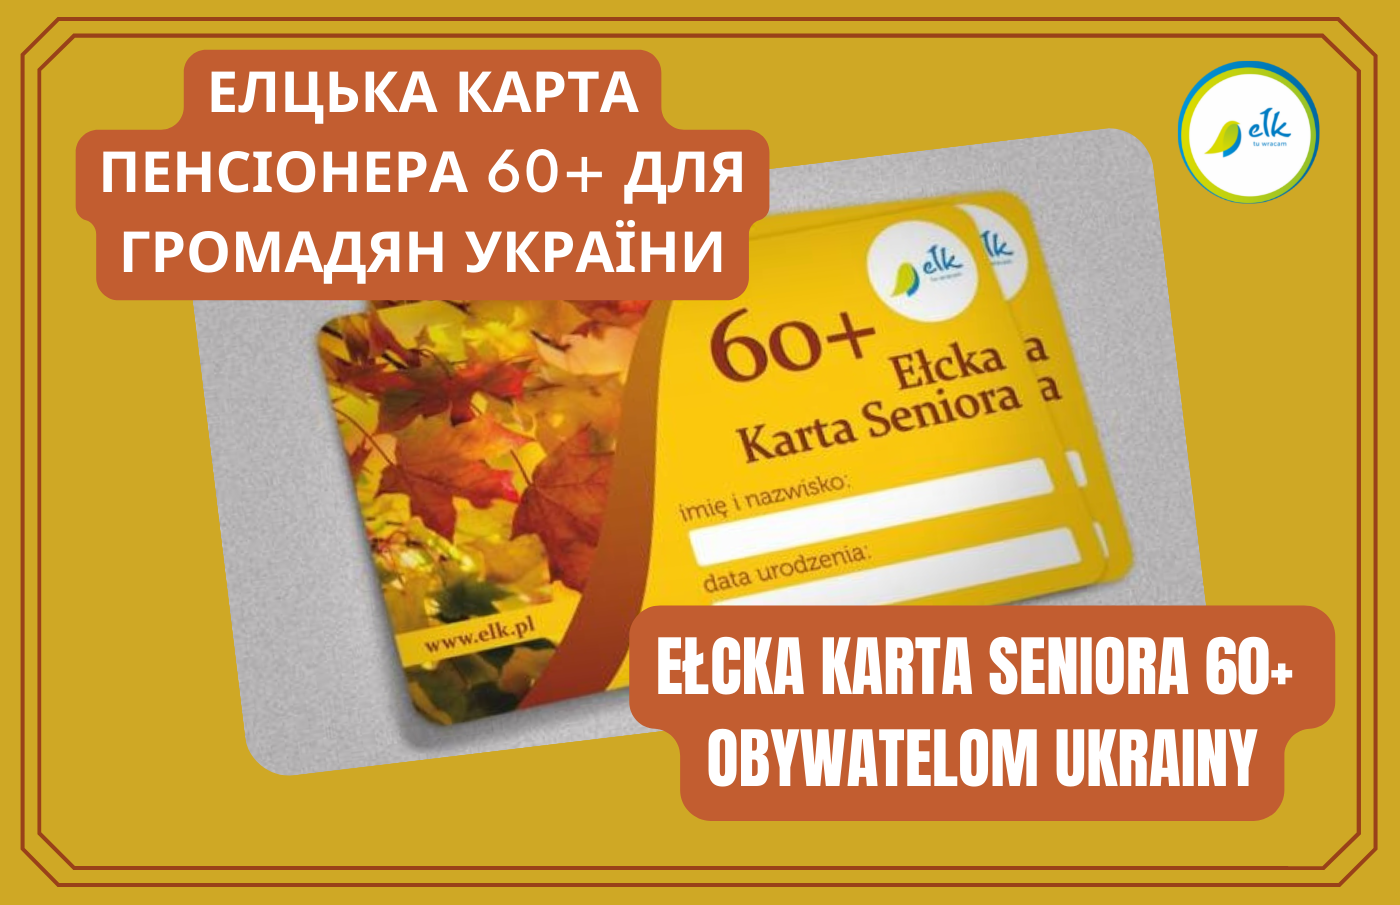 Elk Senior Card 60+ to citizens of Ukraine